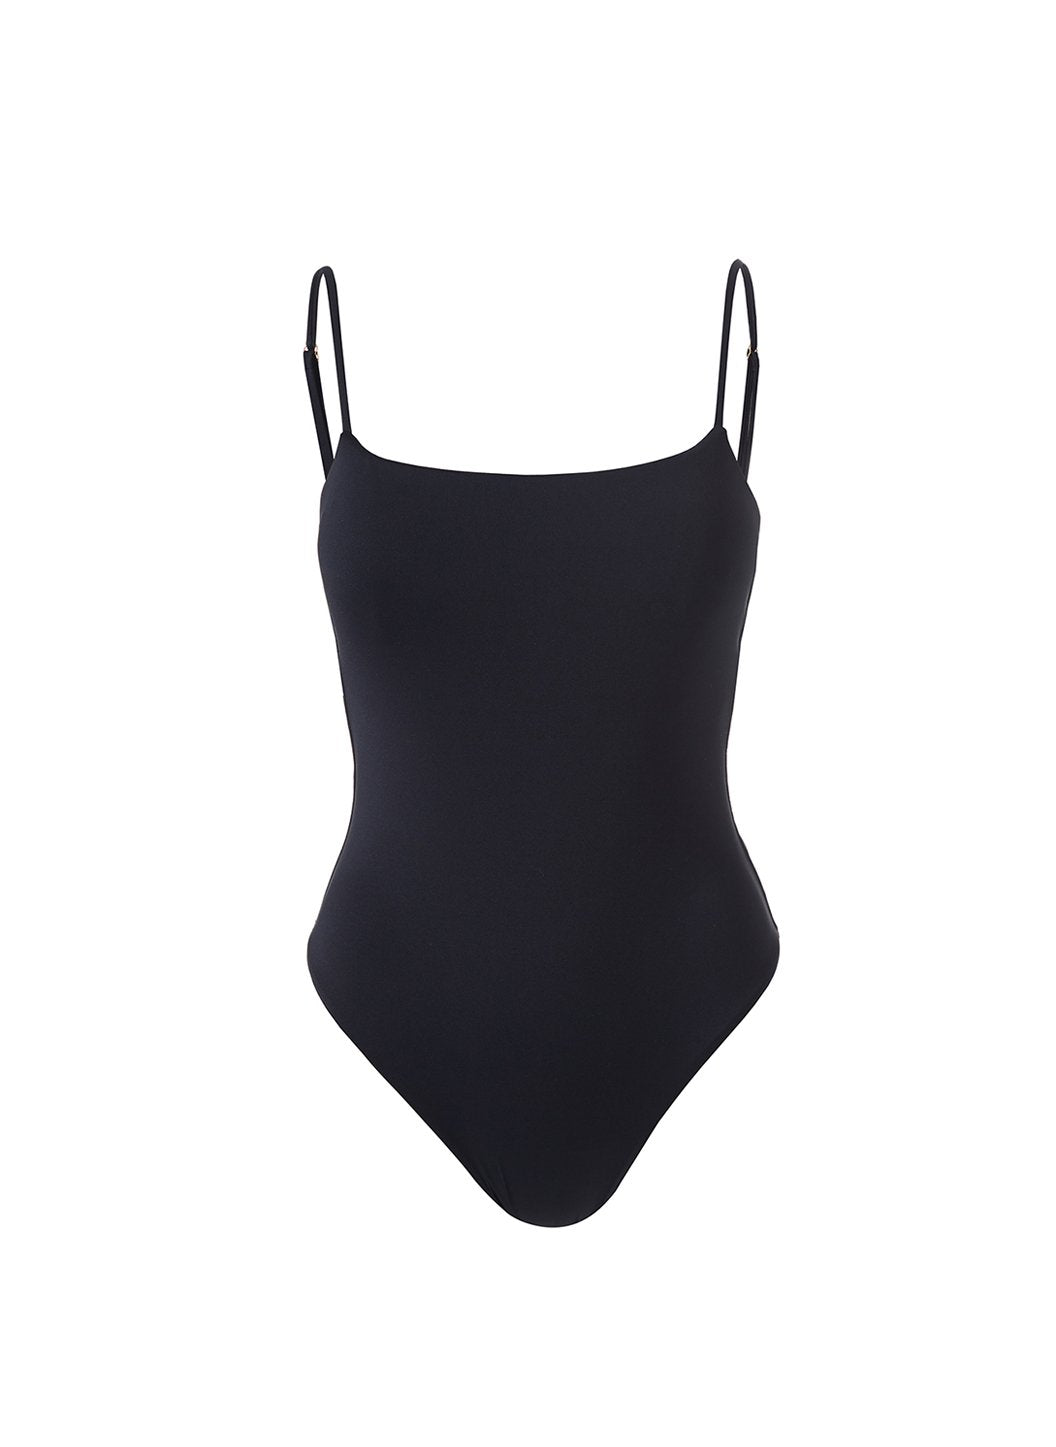 exclusive-maui-black-eco-swimsuit-Cutout